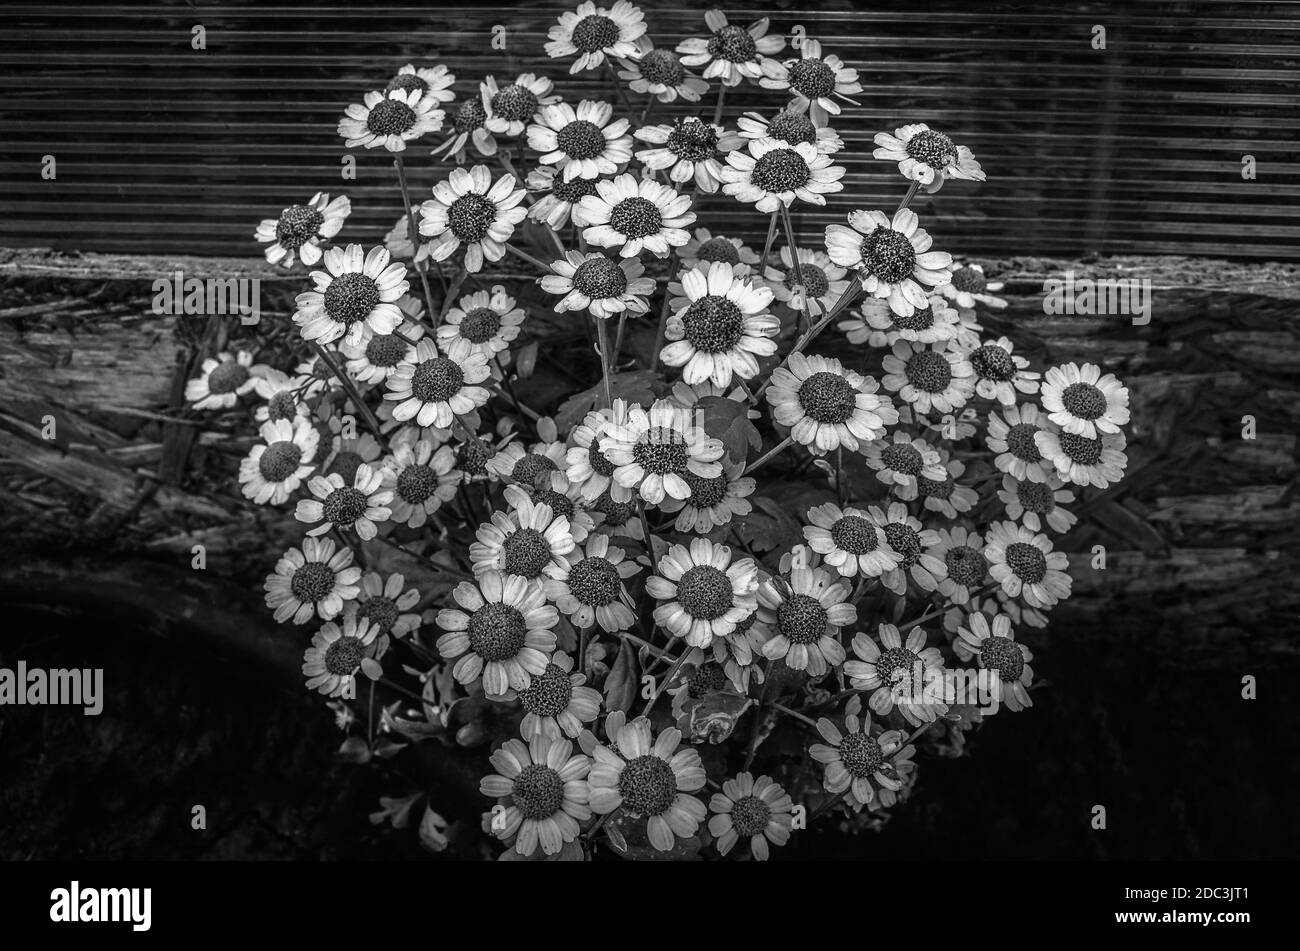 Margherite nel giardino. Pianta erbacea perenne con rizomi brevi e rosette di foglie piccole e arrotondate. Bianco e nero. Foto Stock